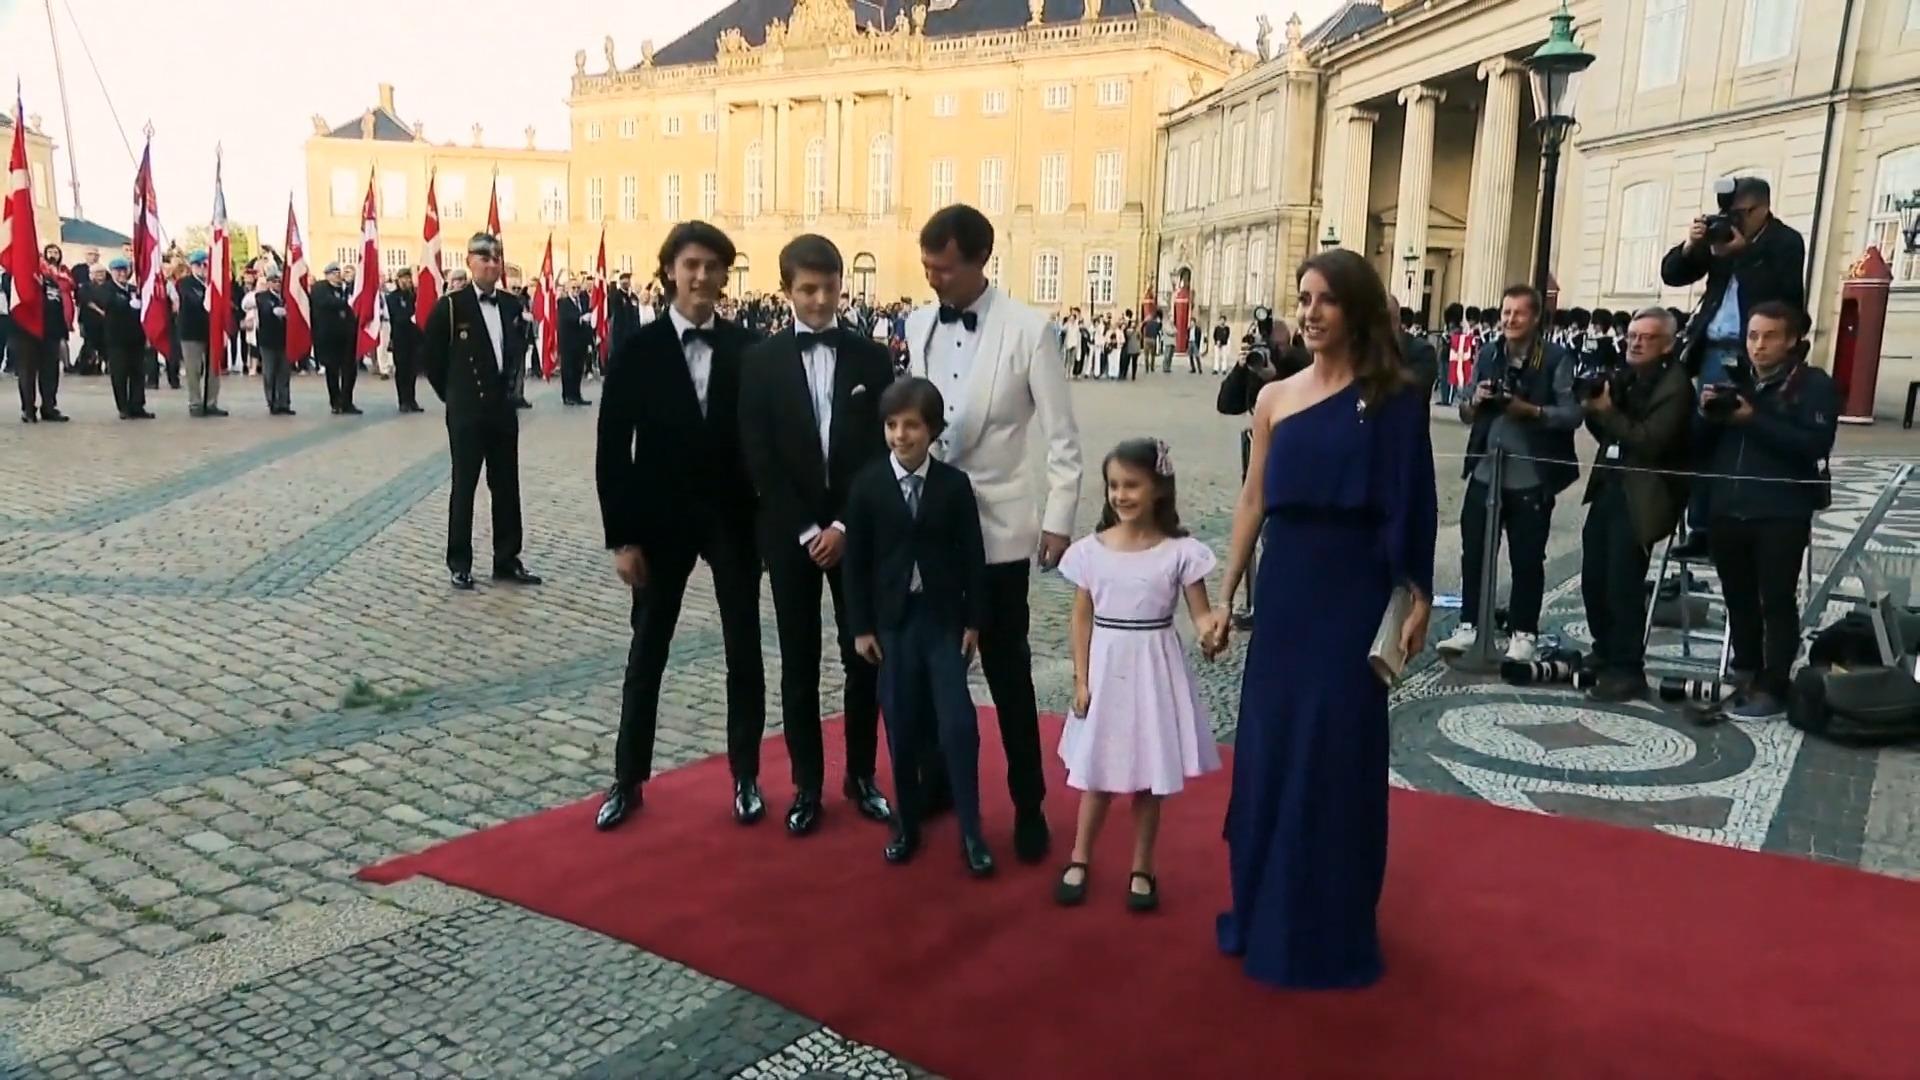 Neues Familienfoto der dänischen Royals überrascht Nach Drama um Titelentzug